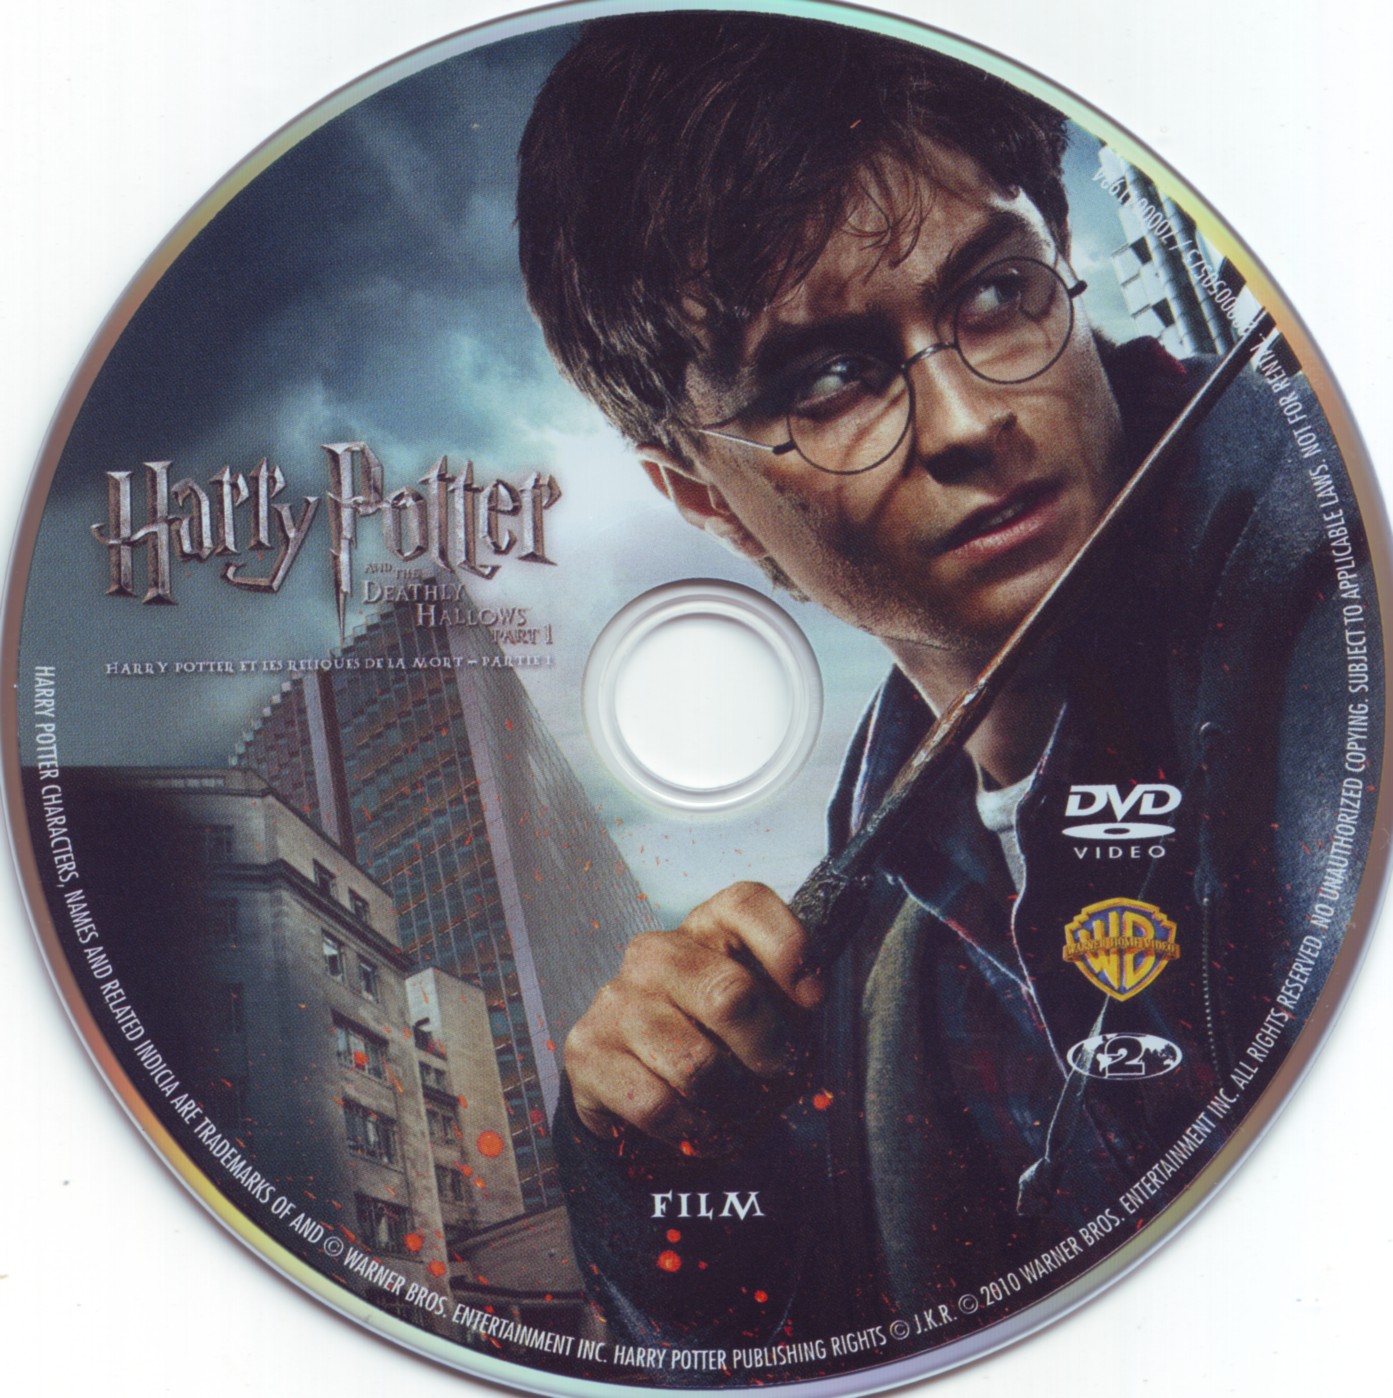 Harry Potter et les reliques de la mort - 1re partie (FILM)